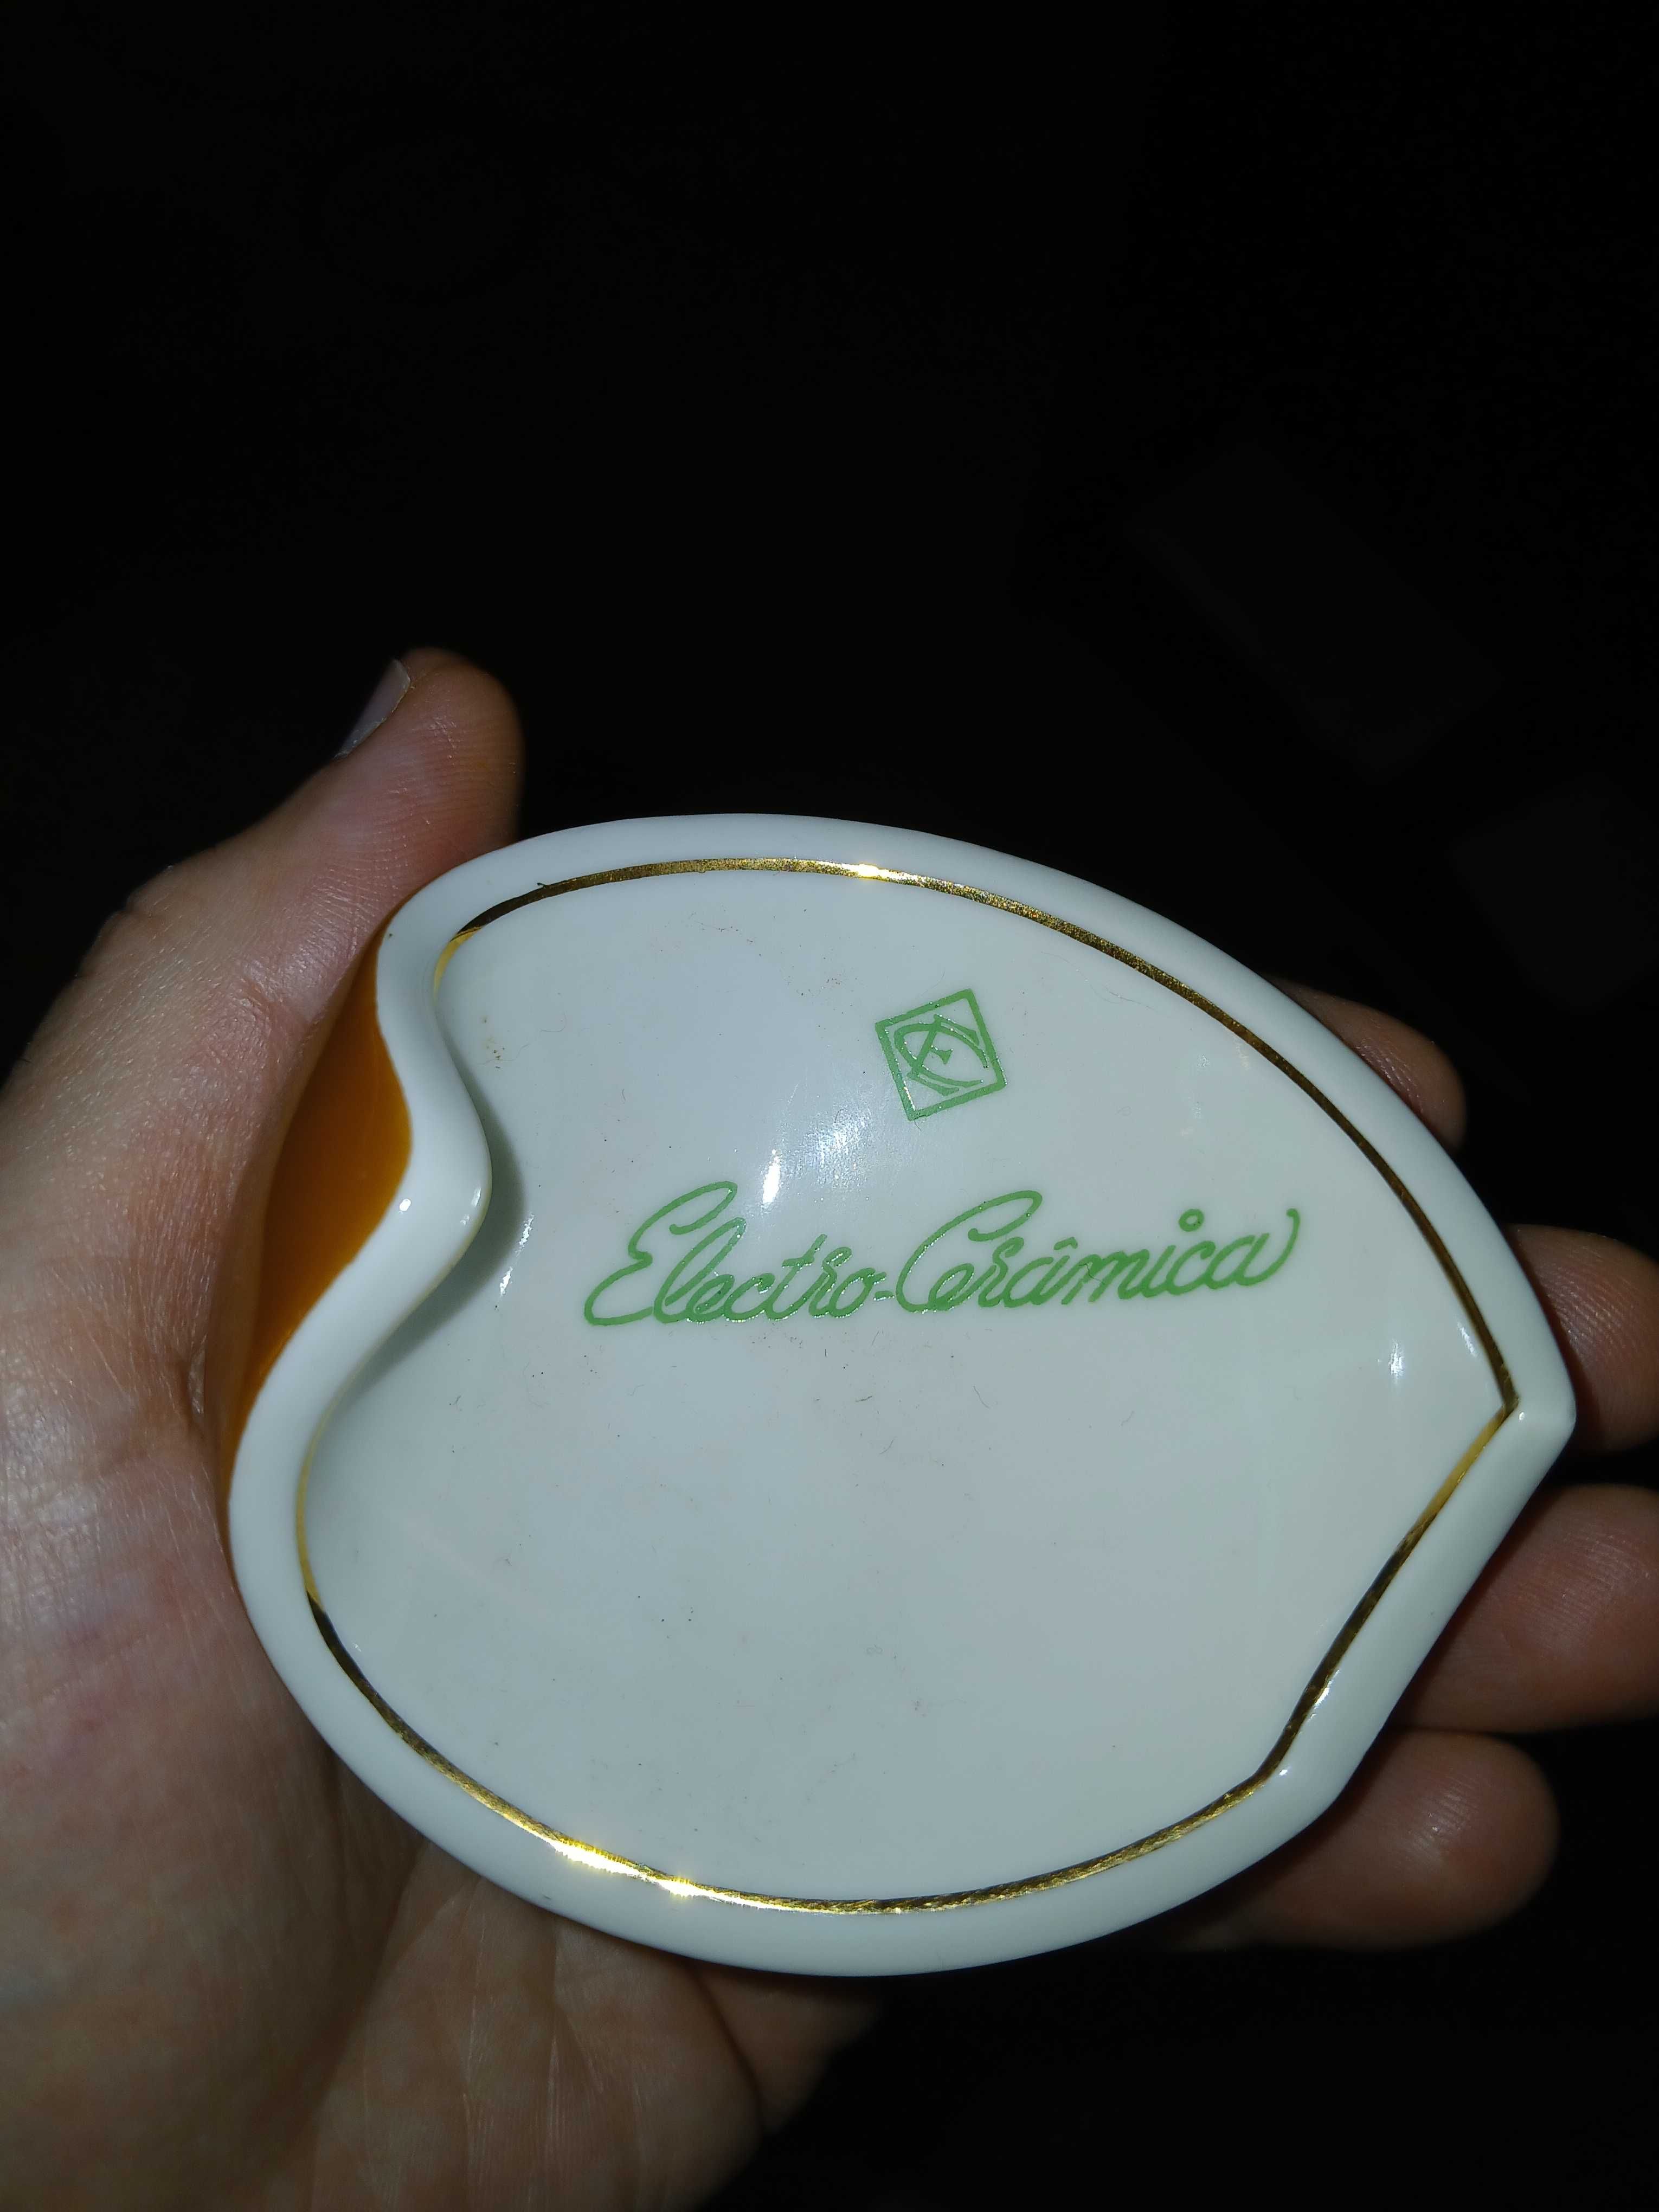 Cinzeiro - Electro Ceramica Candal - Raro